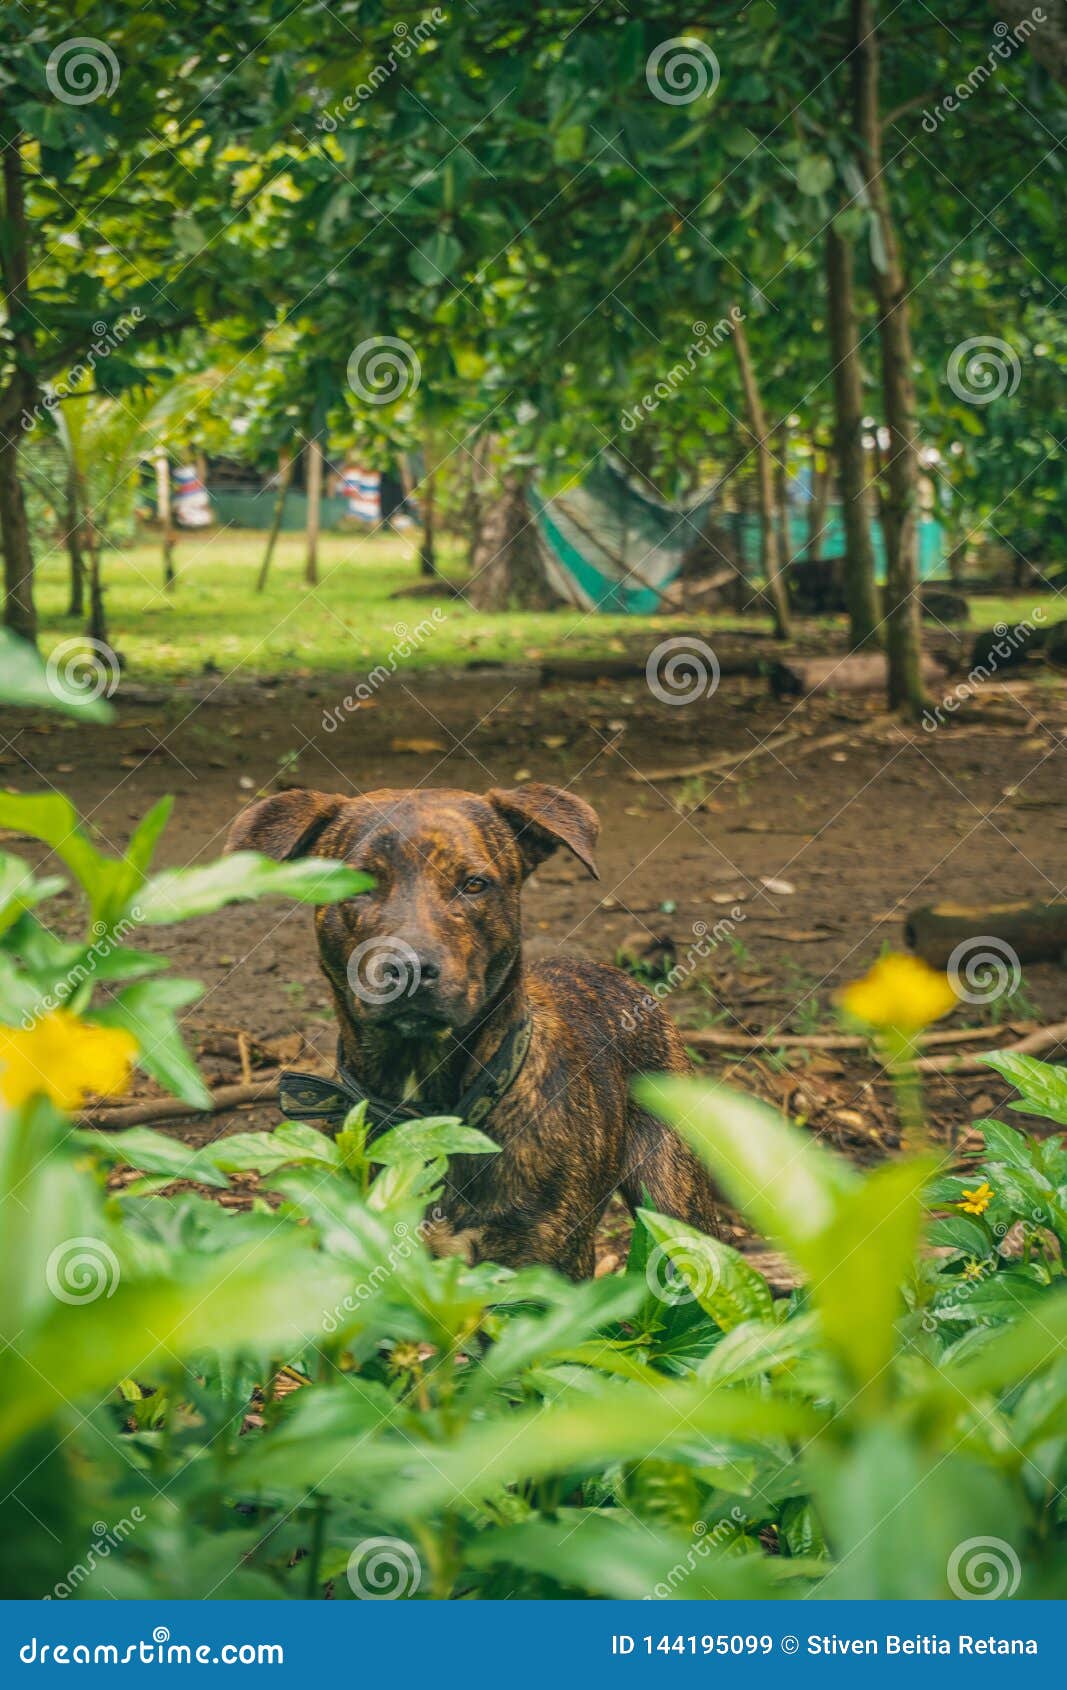 brown dog among green bushes